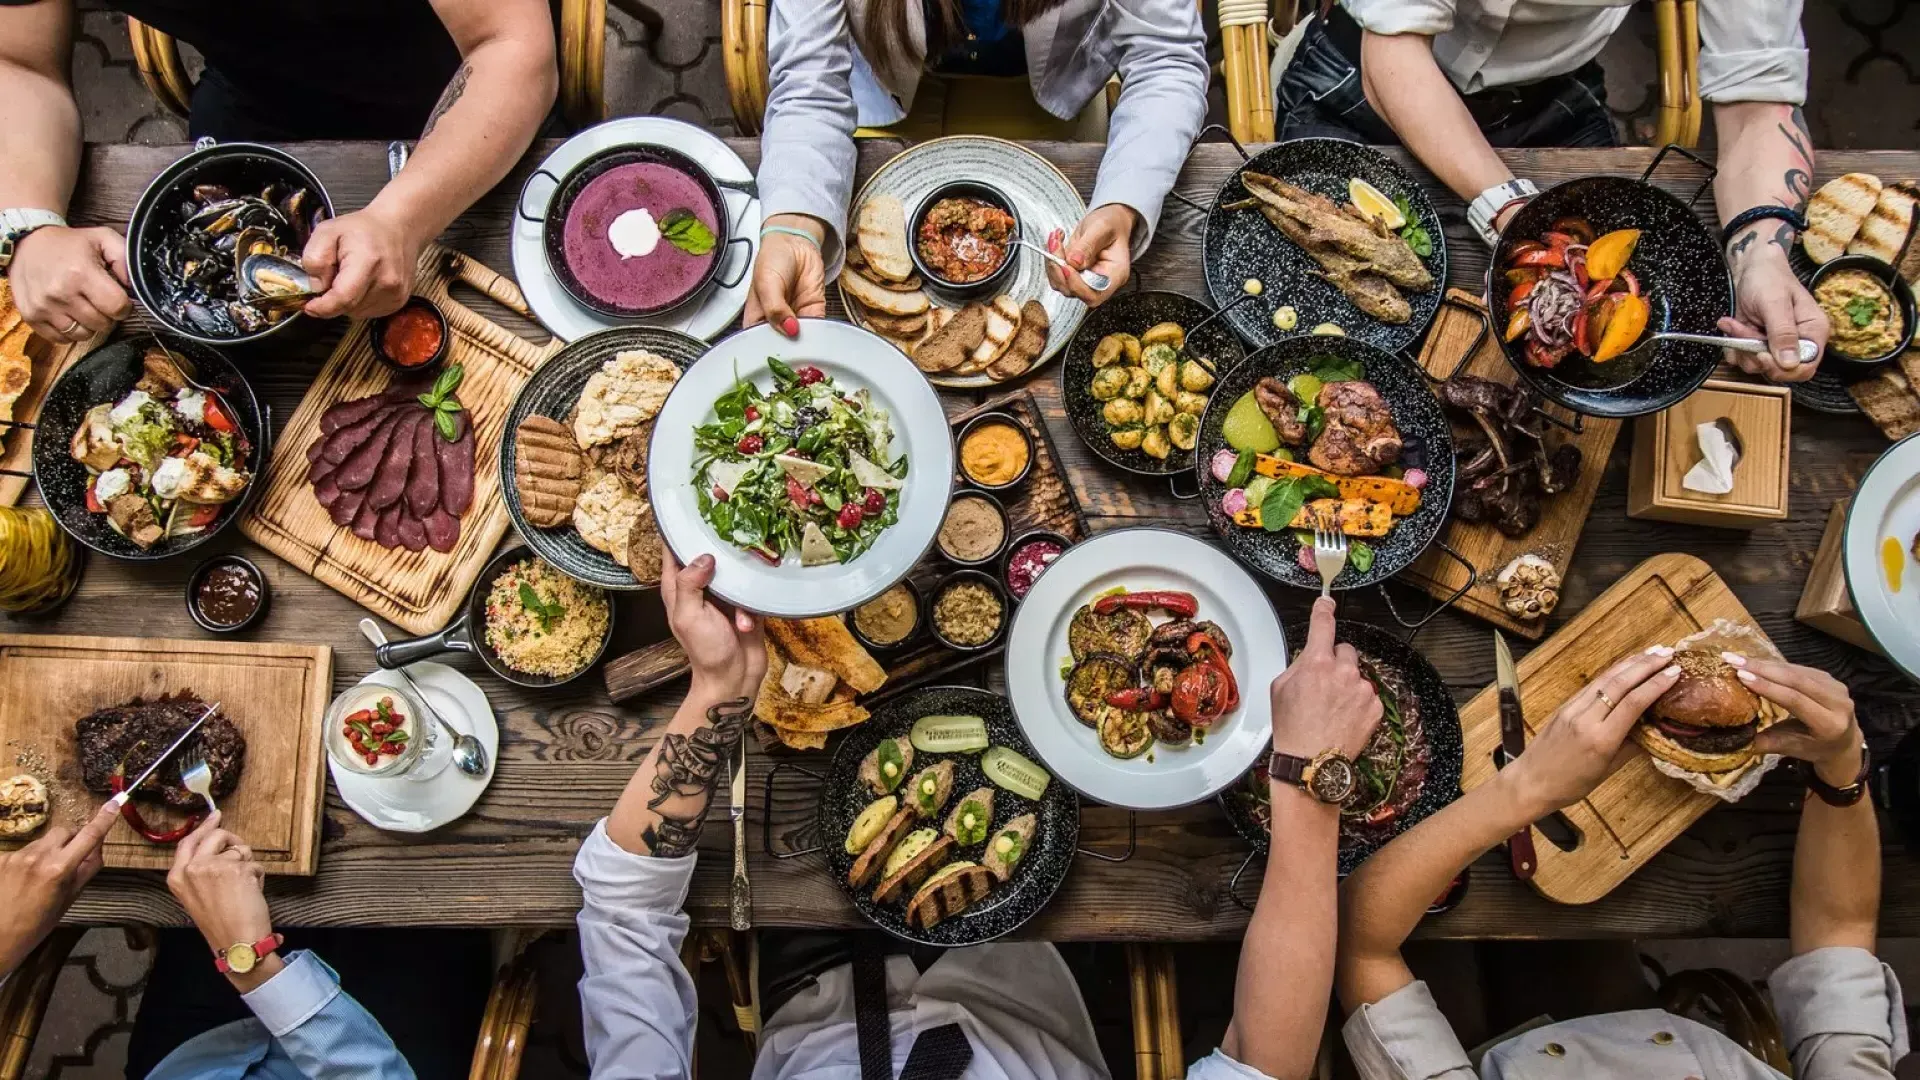 Personas sentadas en una mesa de comedor, compartiendo comida.